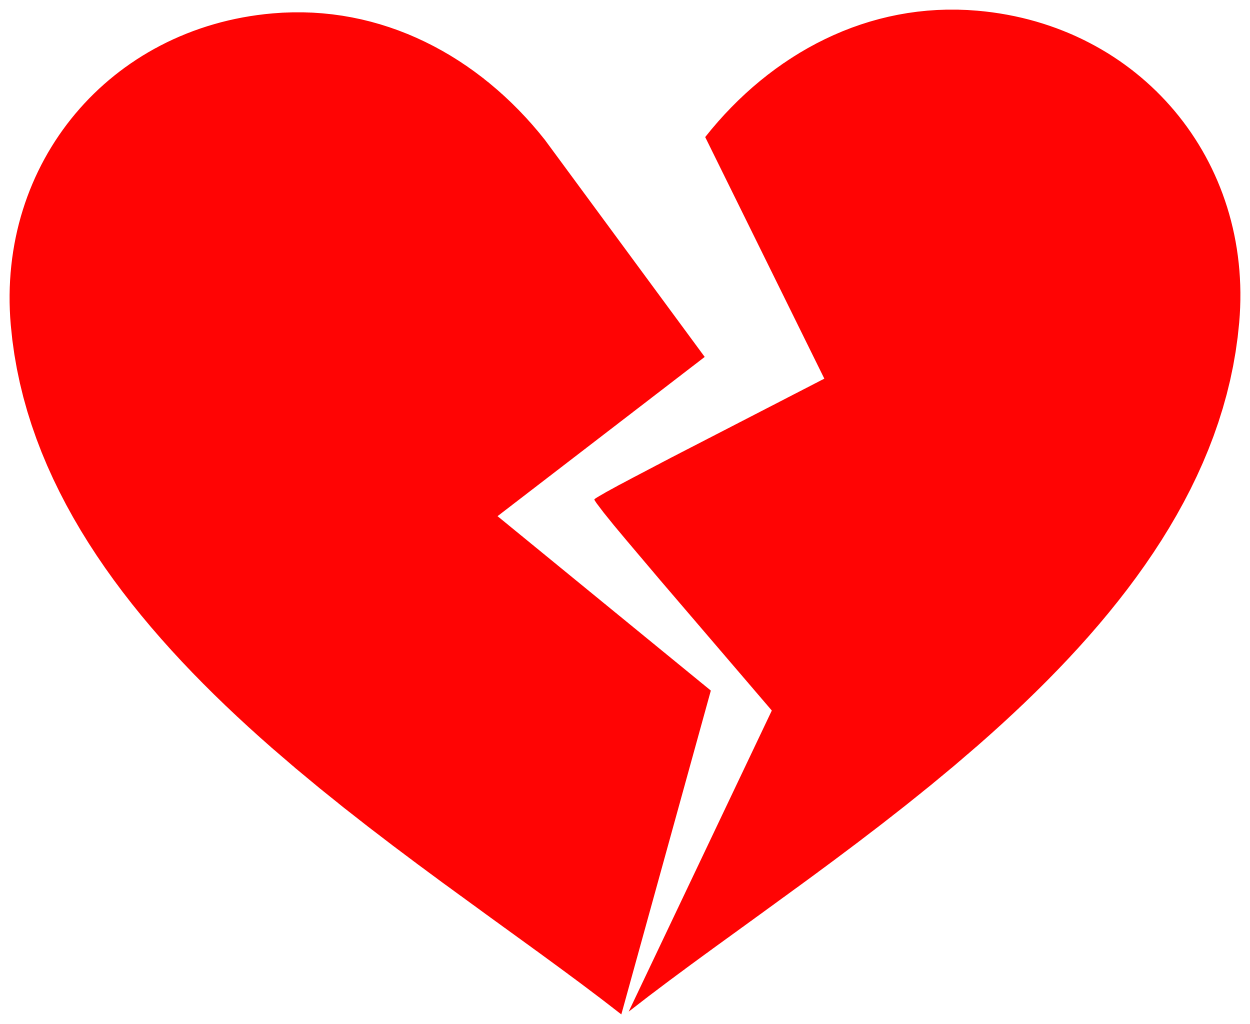 A broken heart symbol.